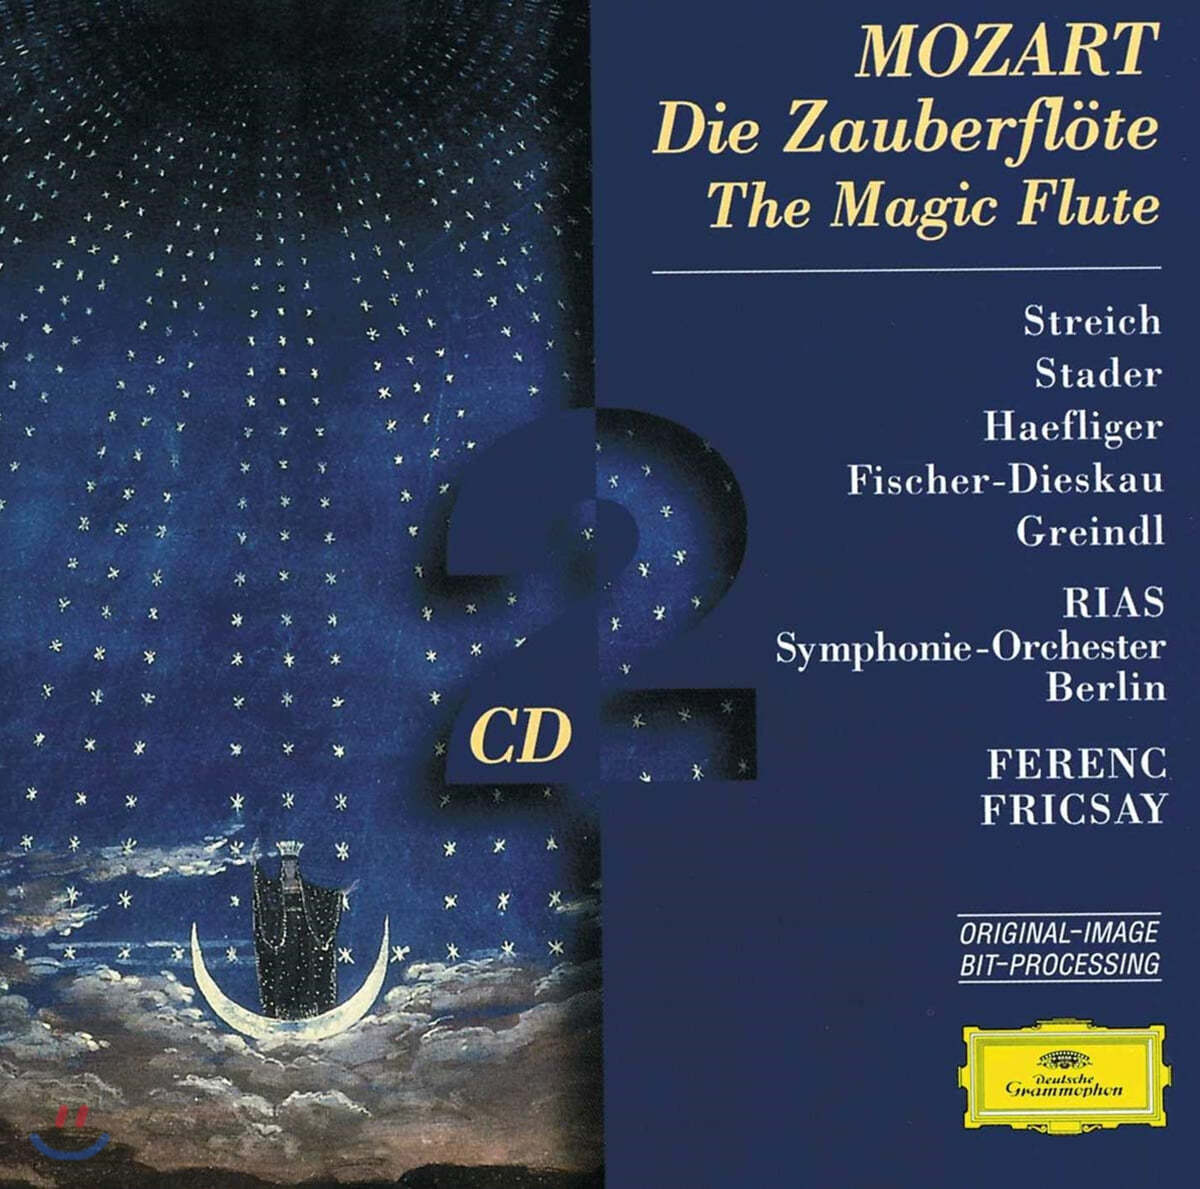 Ferenc Fricsay 모차르트: 마술피리 (Mozart : The Magic Flute) 